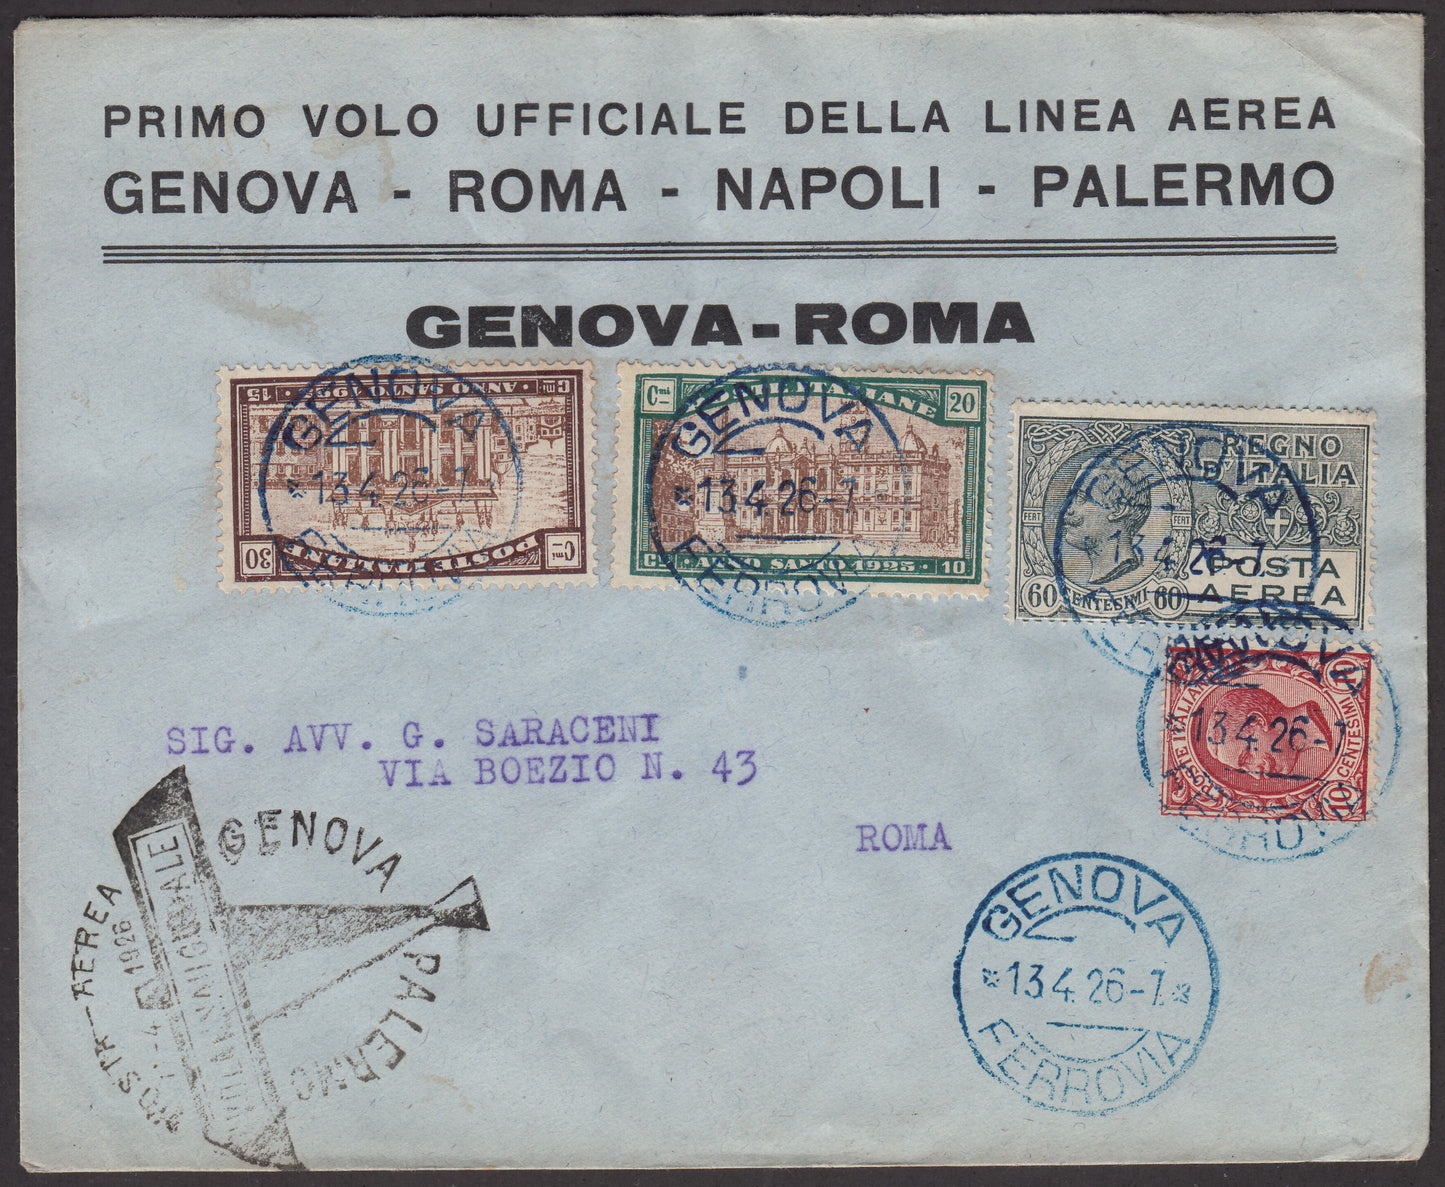 1926 - Primo volo Genova Roma 13/4/1926 con affrancatura composta da Leoni c.10 rosa + Anno Santo c. 20 + 10 verde azzurro e bruno + c. 30 + 15 bruno e bruno chiaro + P.Aerea c. 60 grigio (81 + 169 + 170 +PA3)